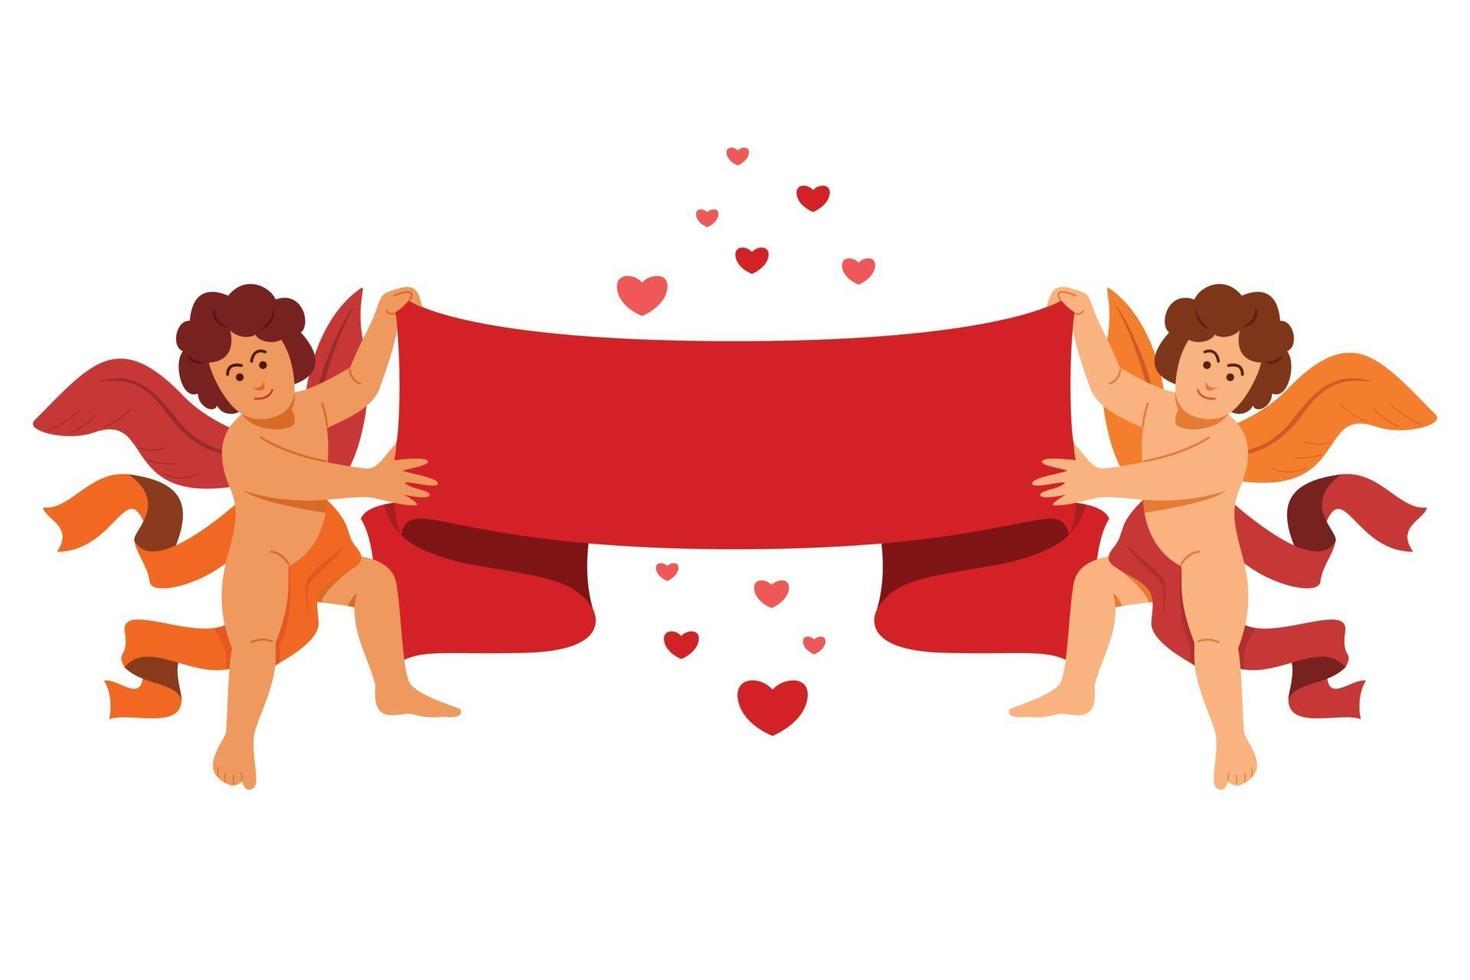 de duo-engel houdt een groot lint en hartjes vast voor de valentijndecoratie. vector